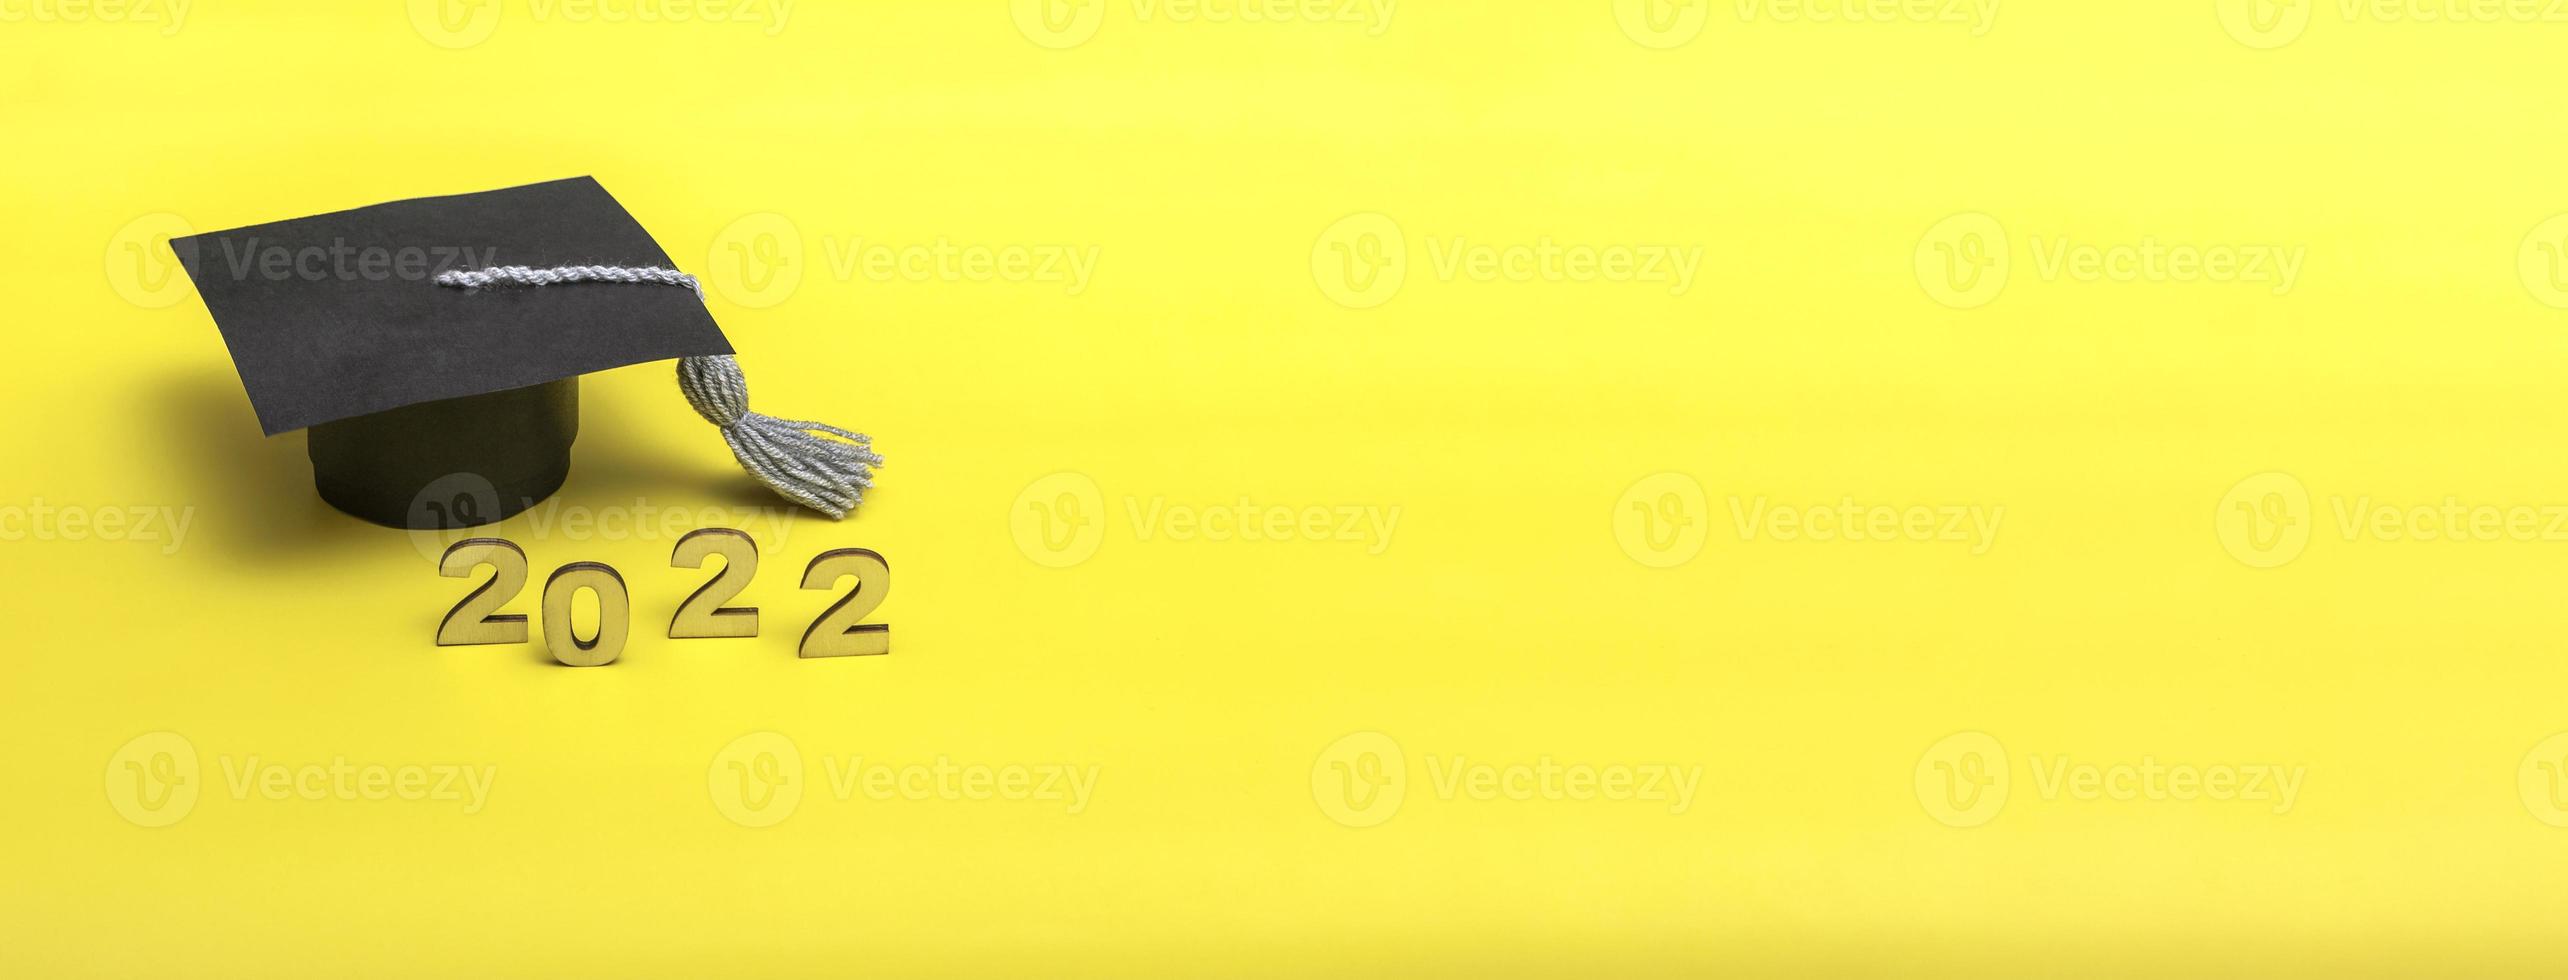 Geschenkbox in Form einer Abschlusskappe. 2022-Release-Konzept auf gelbem Hintergrundkopierraum. Banner foto